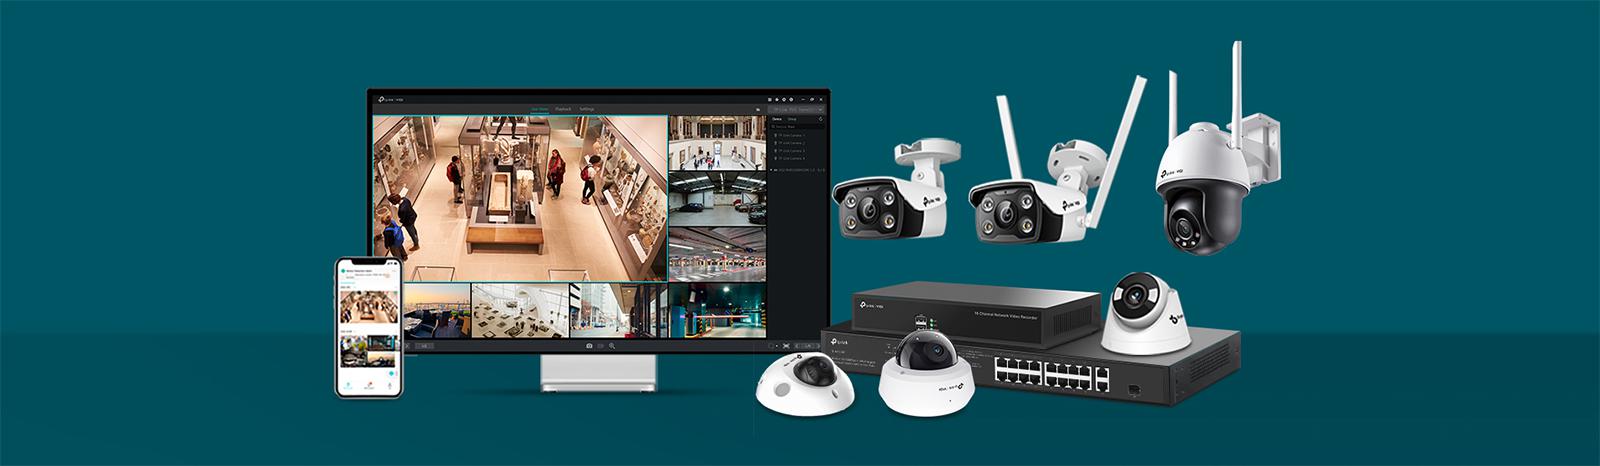 Profesjonalny monitoring z kamerą IP TP-Link VIGI C540 4 MPx – łatwiejszy, niż kiedykolwiek wcześniej!